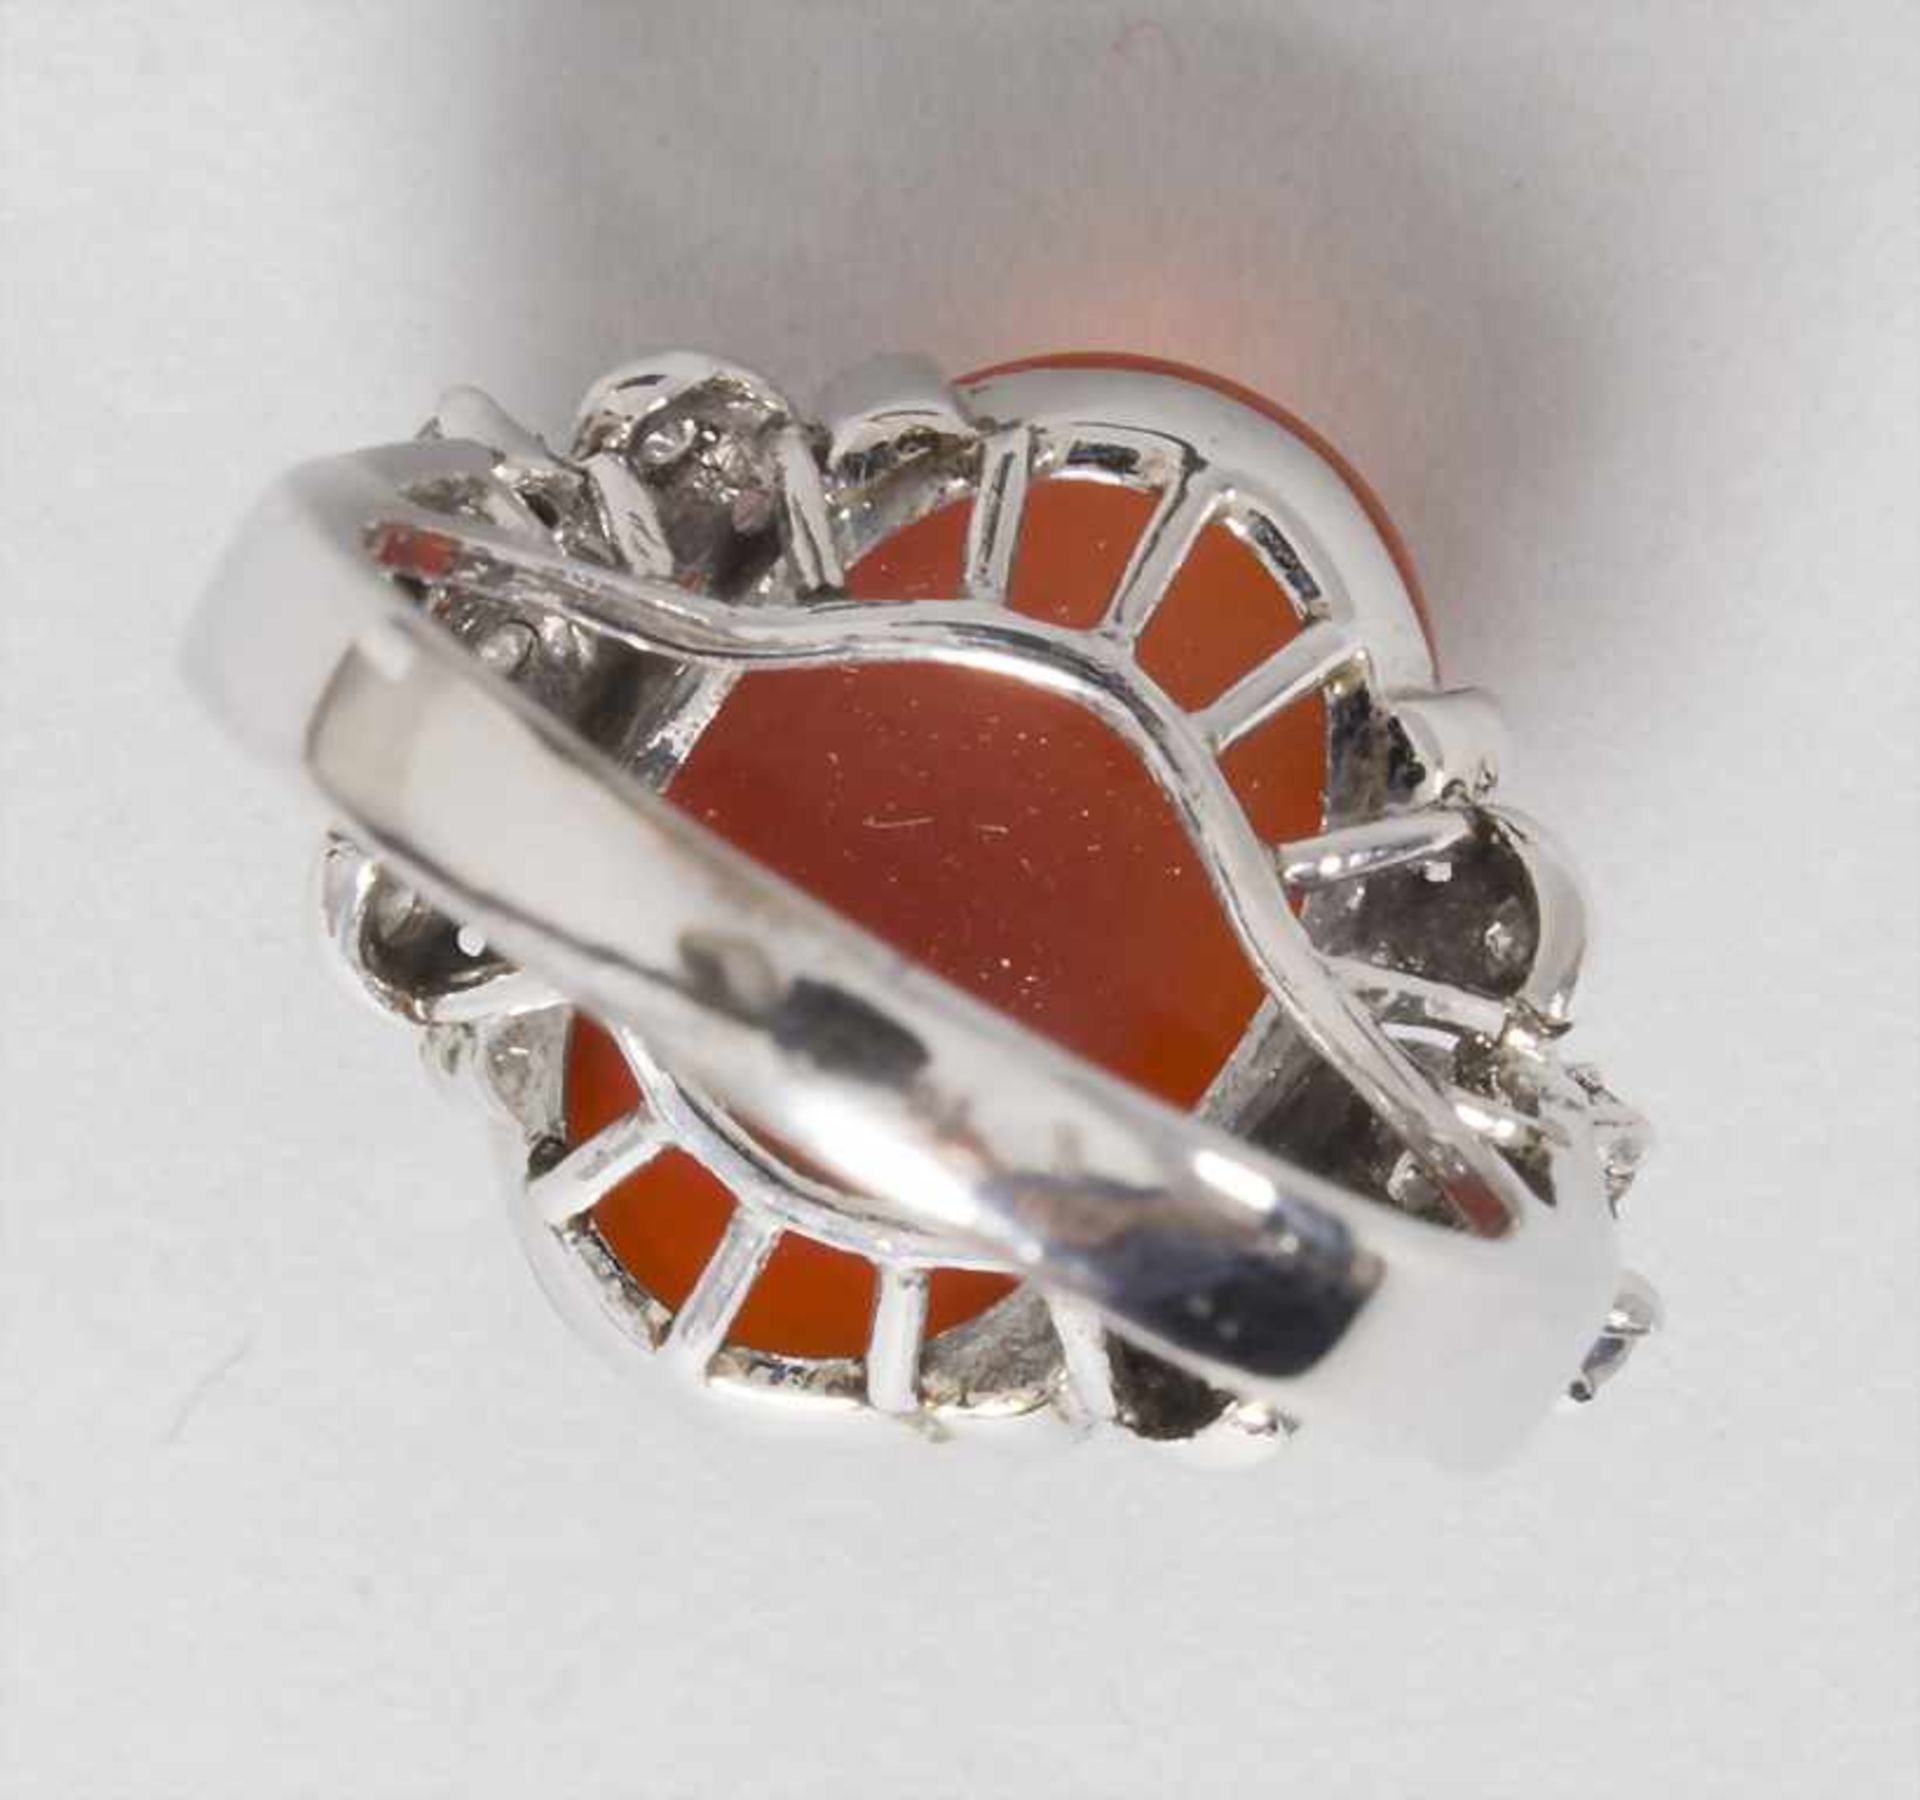 Damenring mit Diamant und Karneol / A ladies ring with diamond and carnelian - Bild 5 aus 5